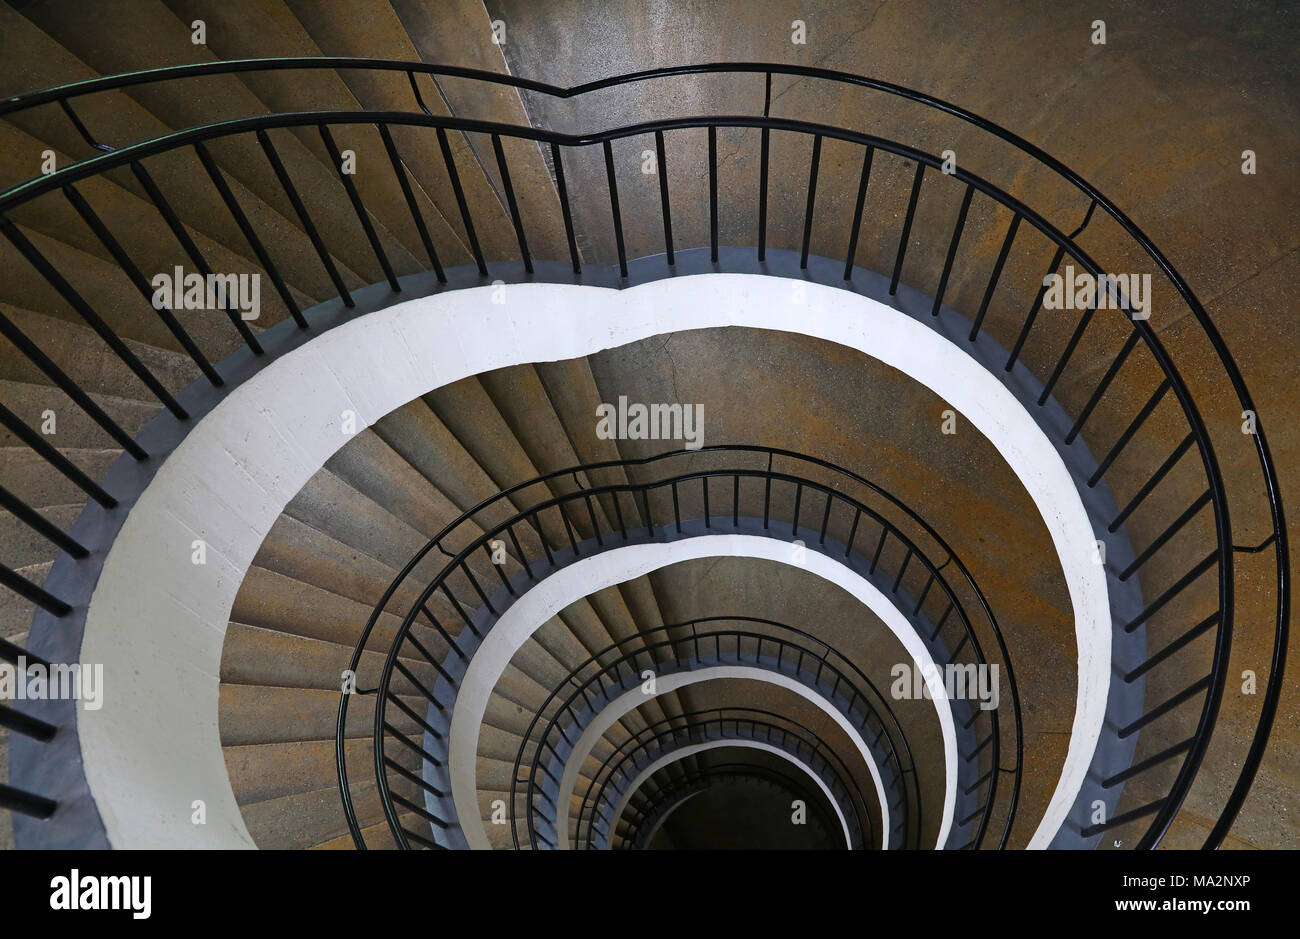 Escalera de caracol con forma curva decreciente perspectiva, un alto ángulo de visualización Foto de stock